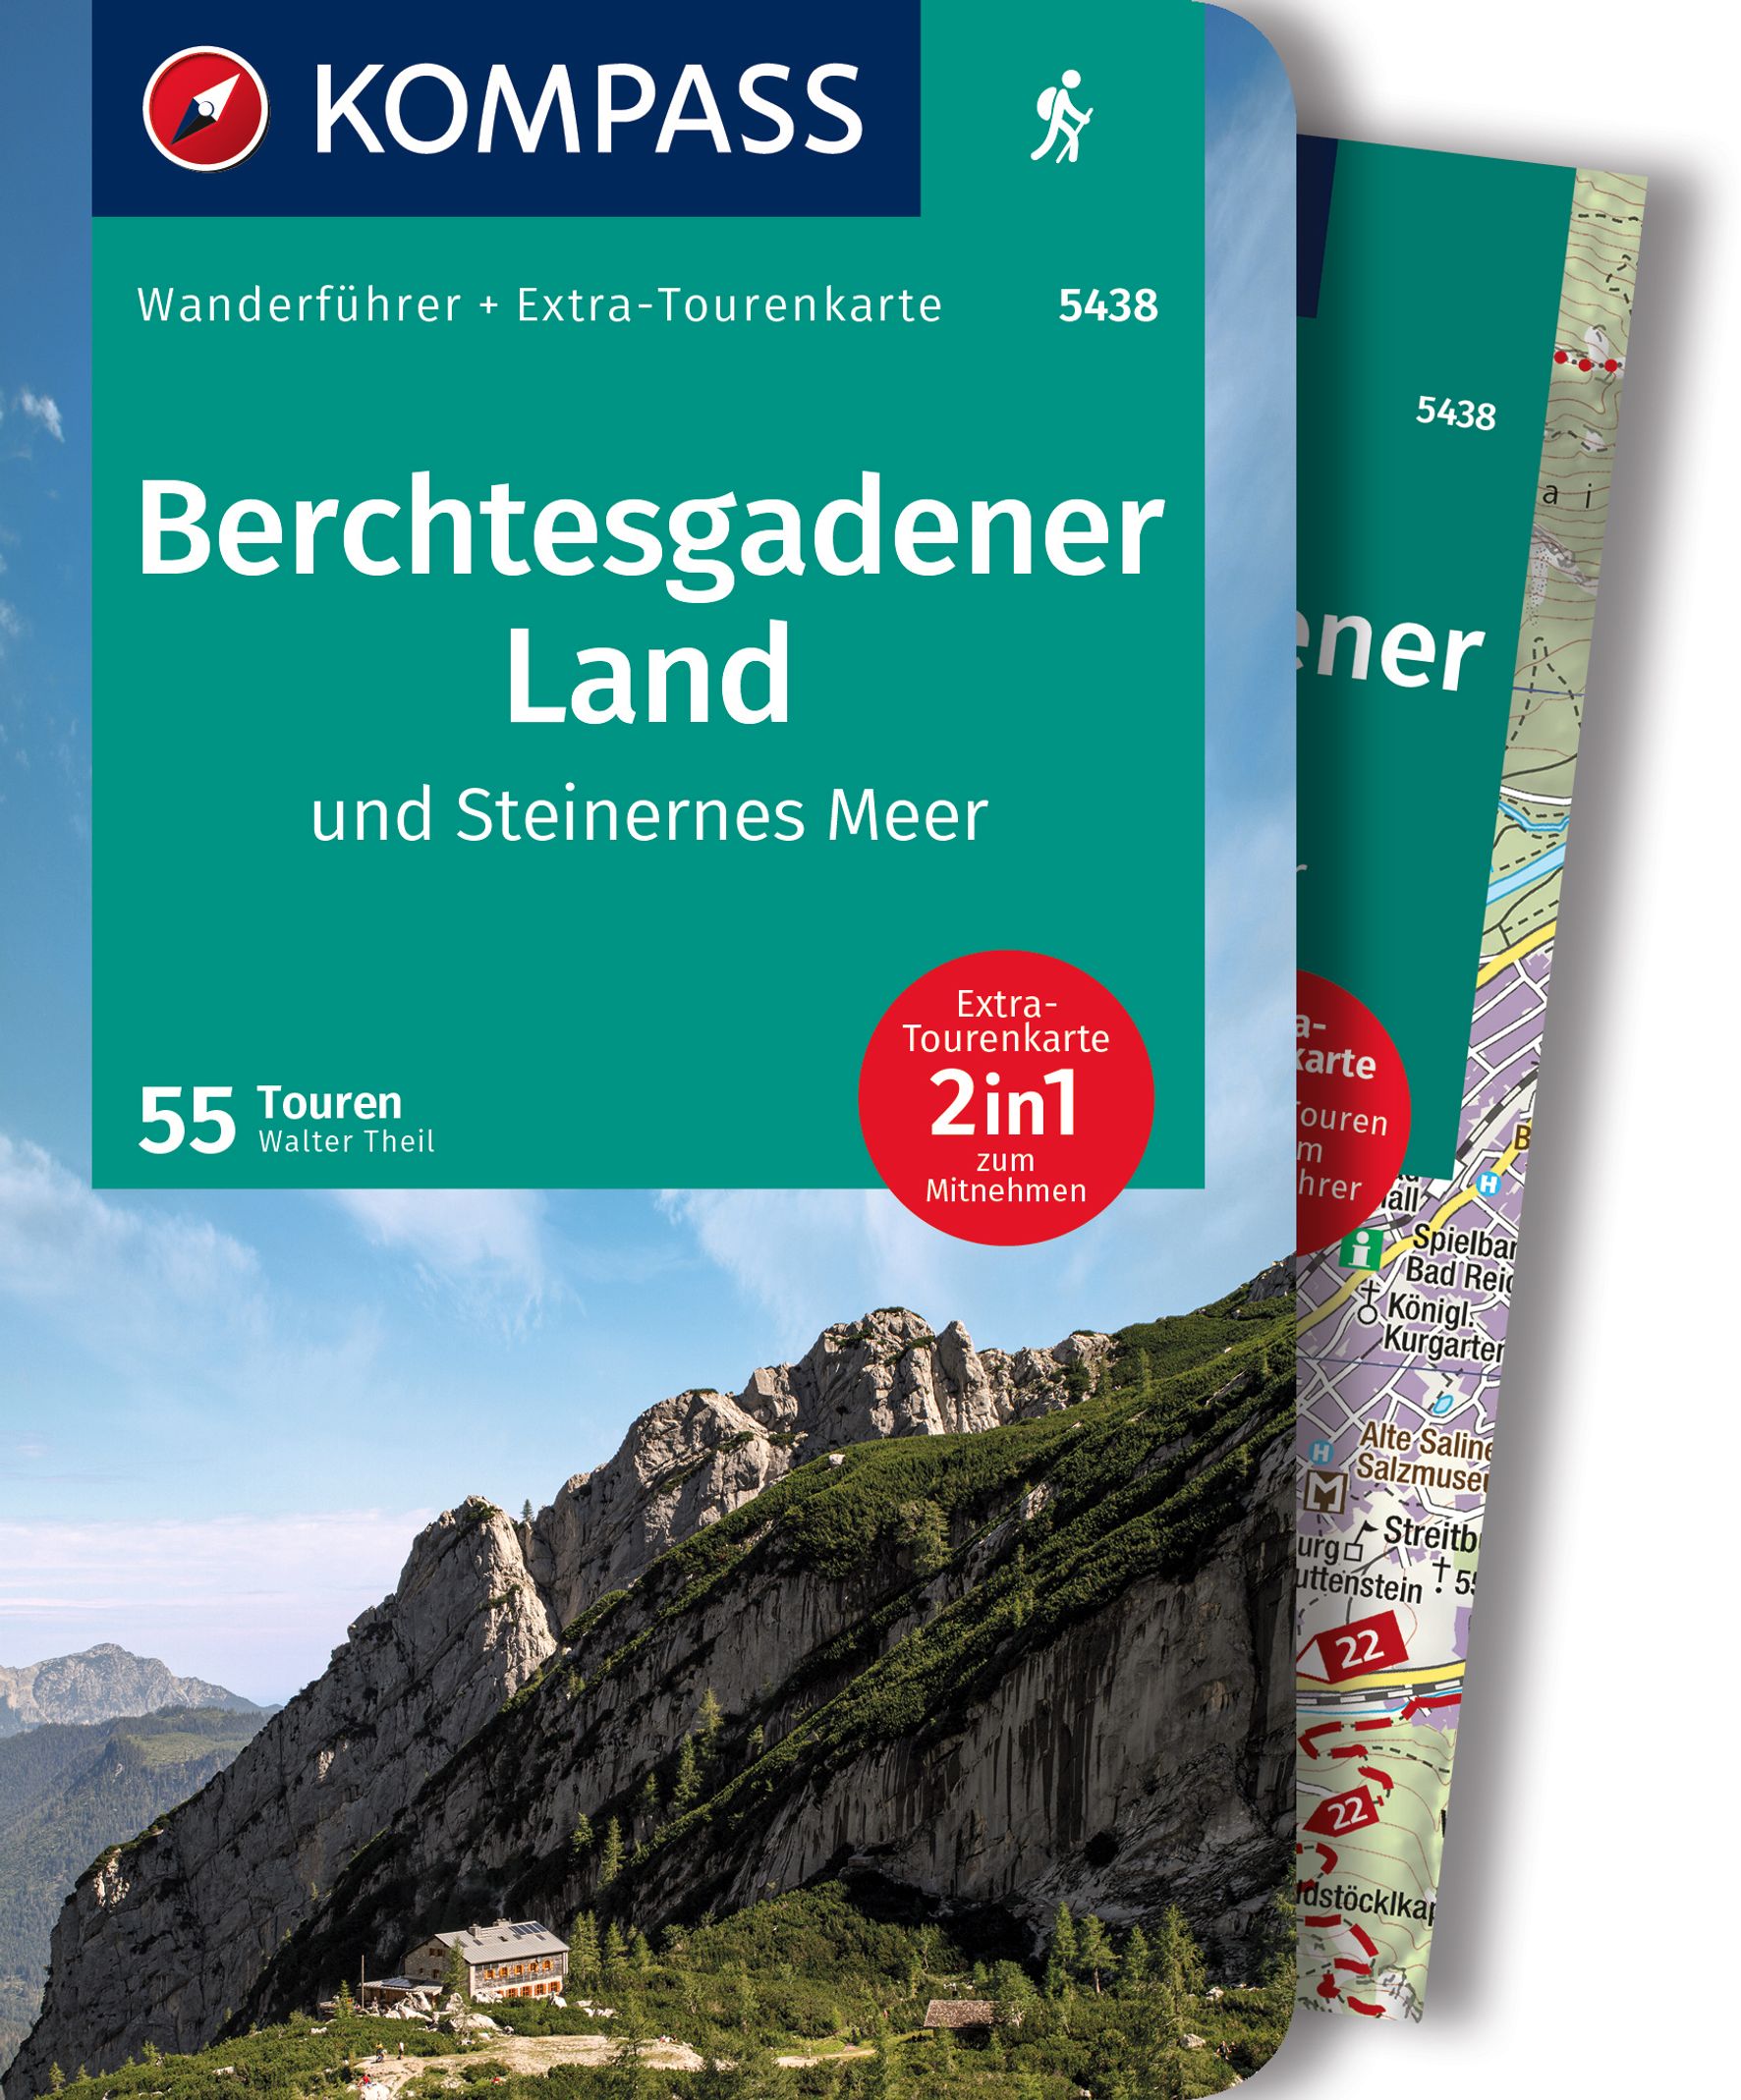 MAIRDUMONT Berchtesgadener Land und Steinernes Meer, 55 Touren mit Extra-Tourenkarte